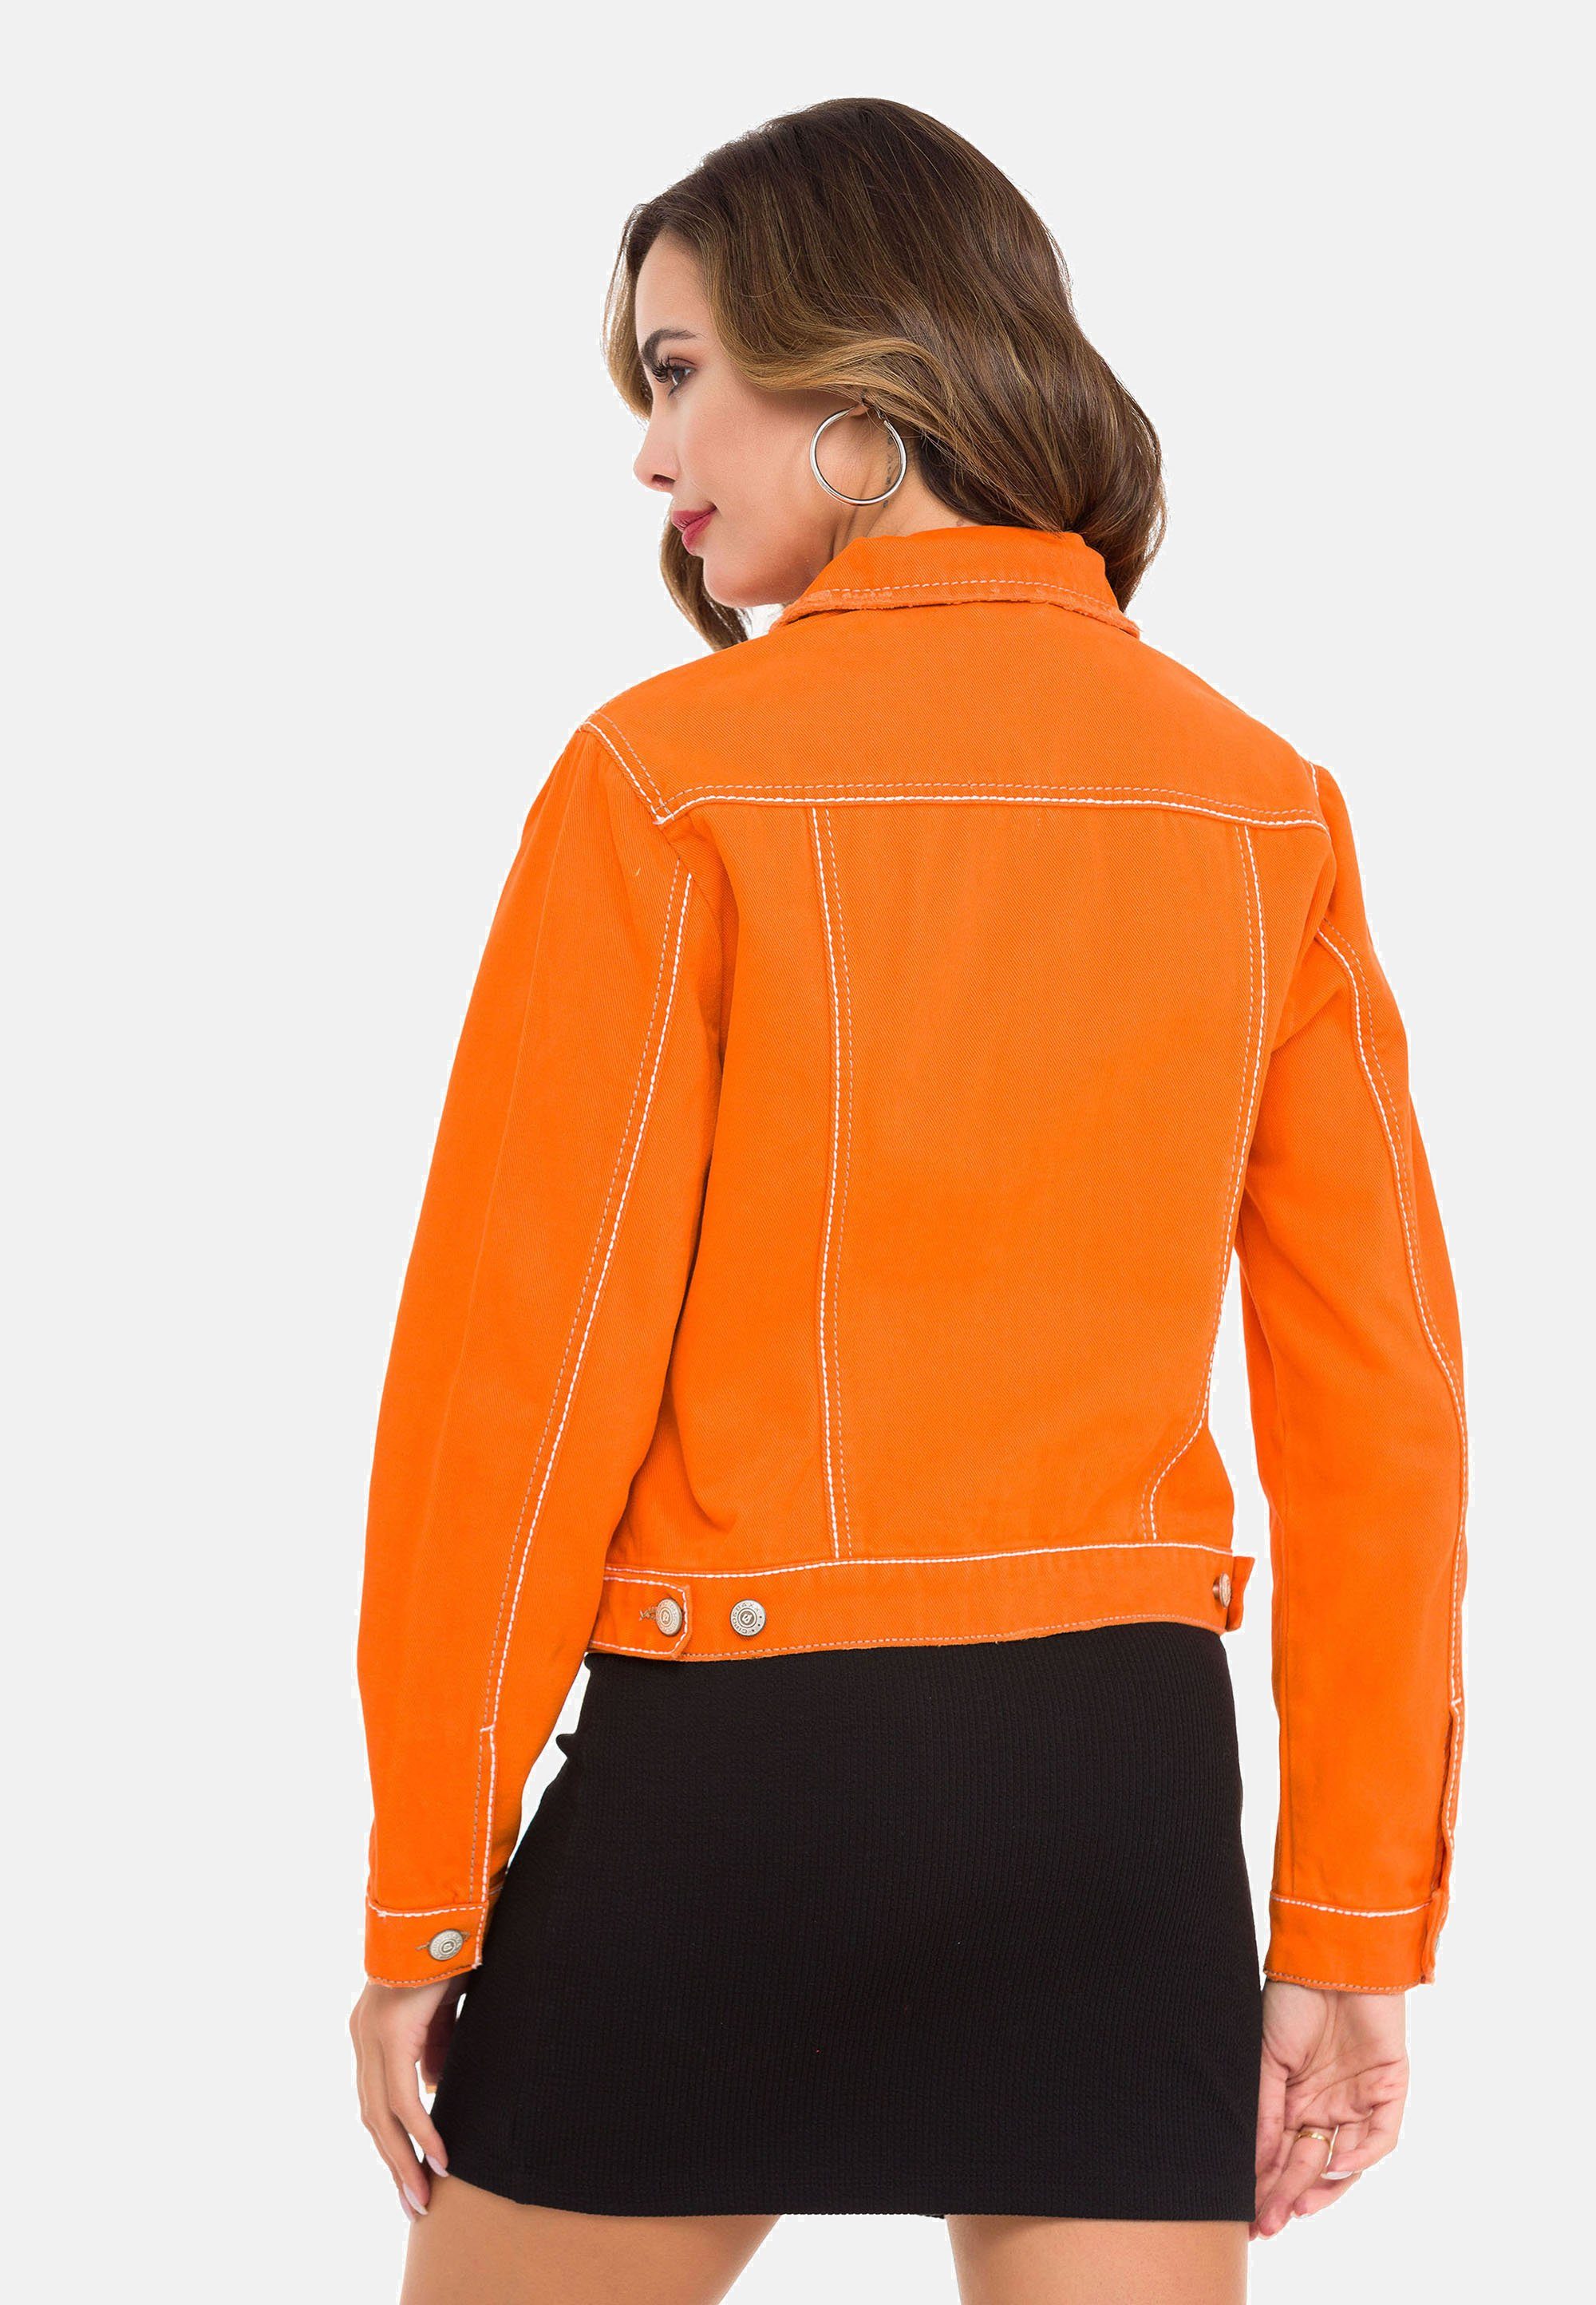 Baxx modernem Look in orange & Cipo Jeansjacke